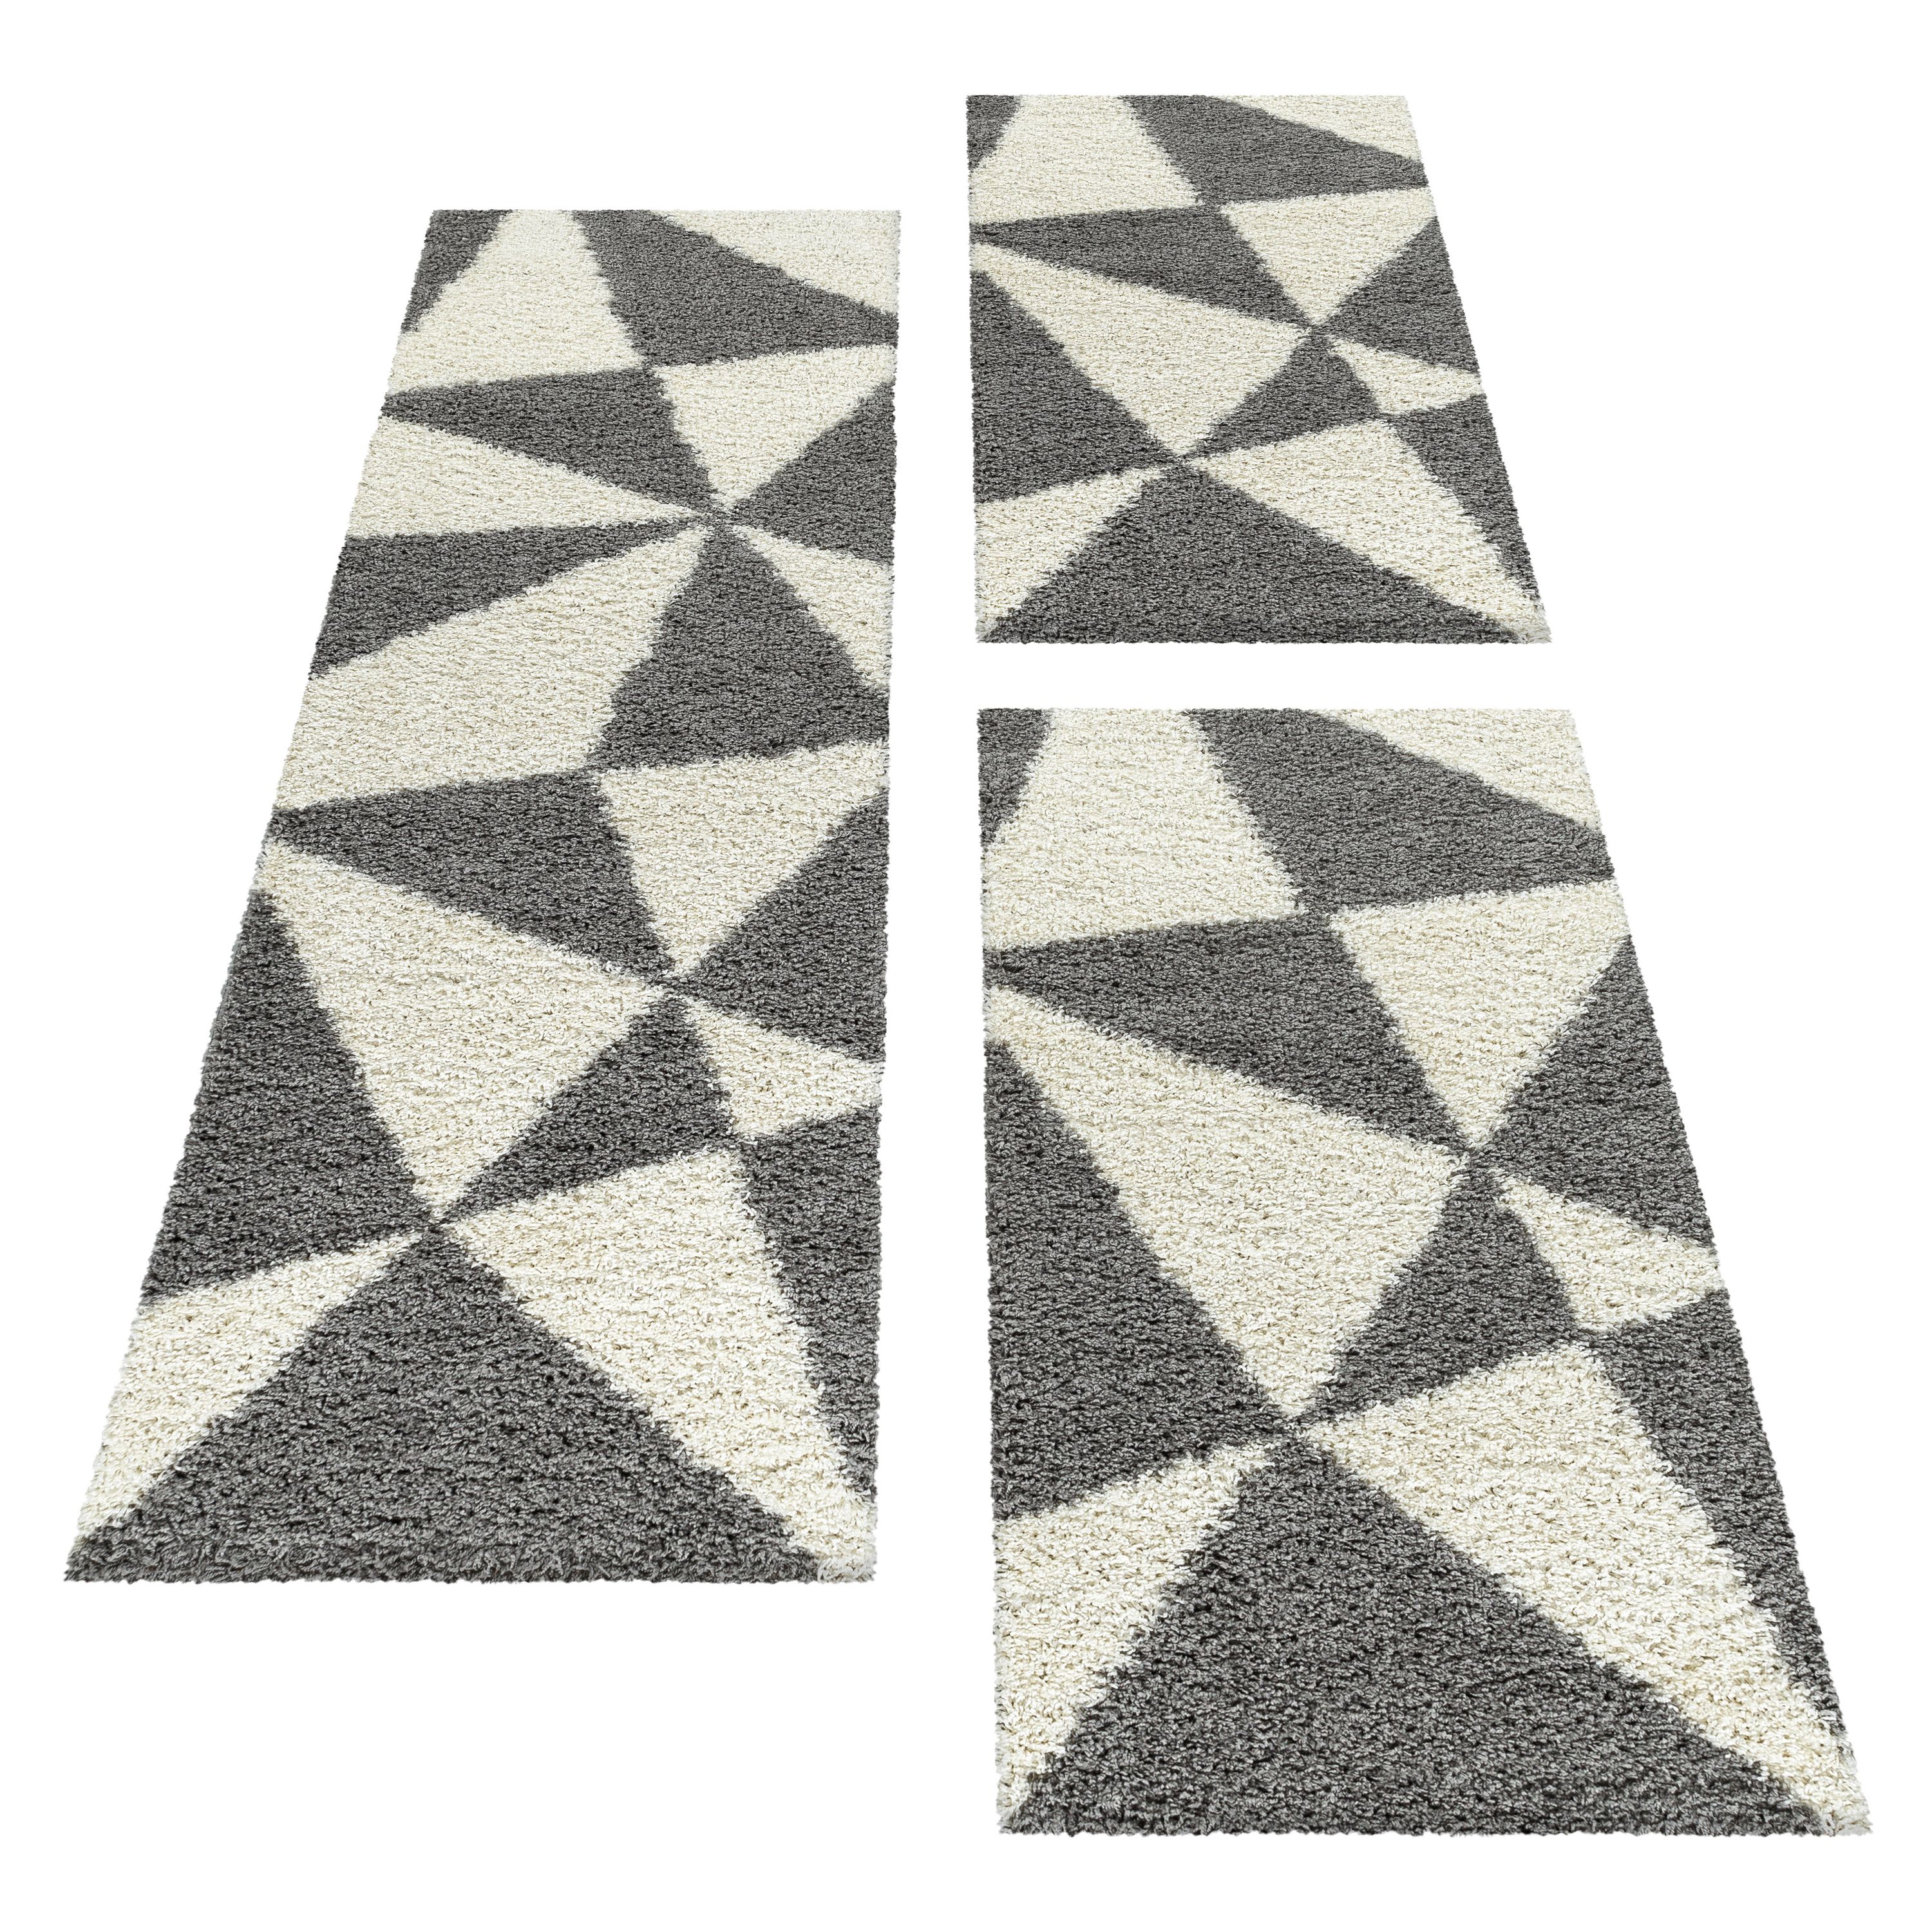 Design Teppich Set Shaggy Bettumrandung Läufer Set Muster Dreiecke 3 Teile Grau